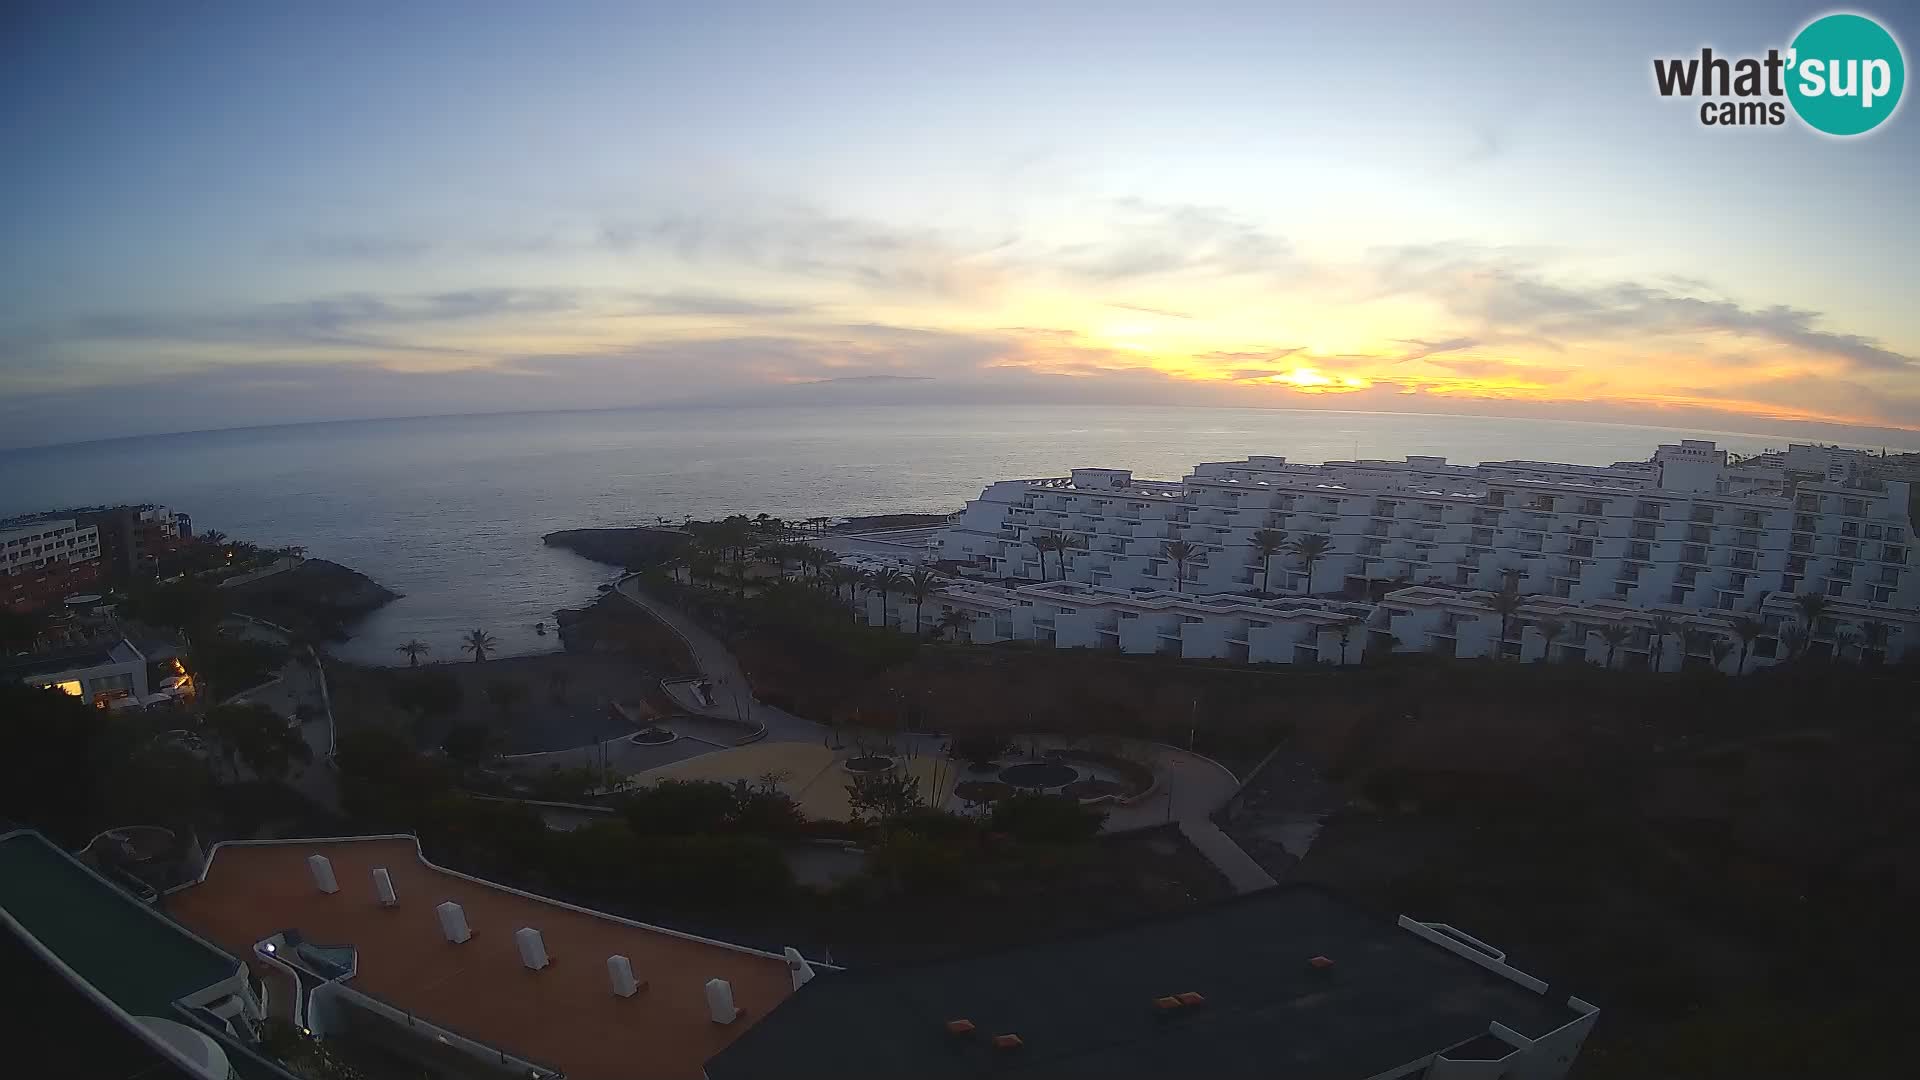 Live-Webcam Las Galgas Strand – Playa Paraiso – Insel La Gomera – Costa Adeje – Teneriffa